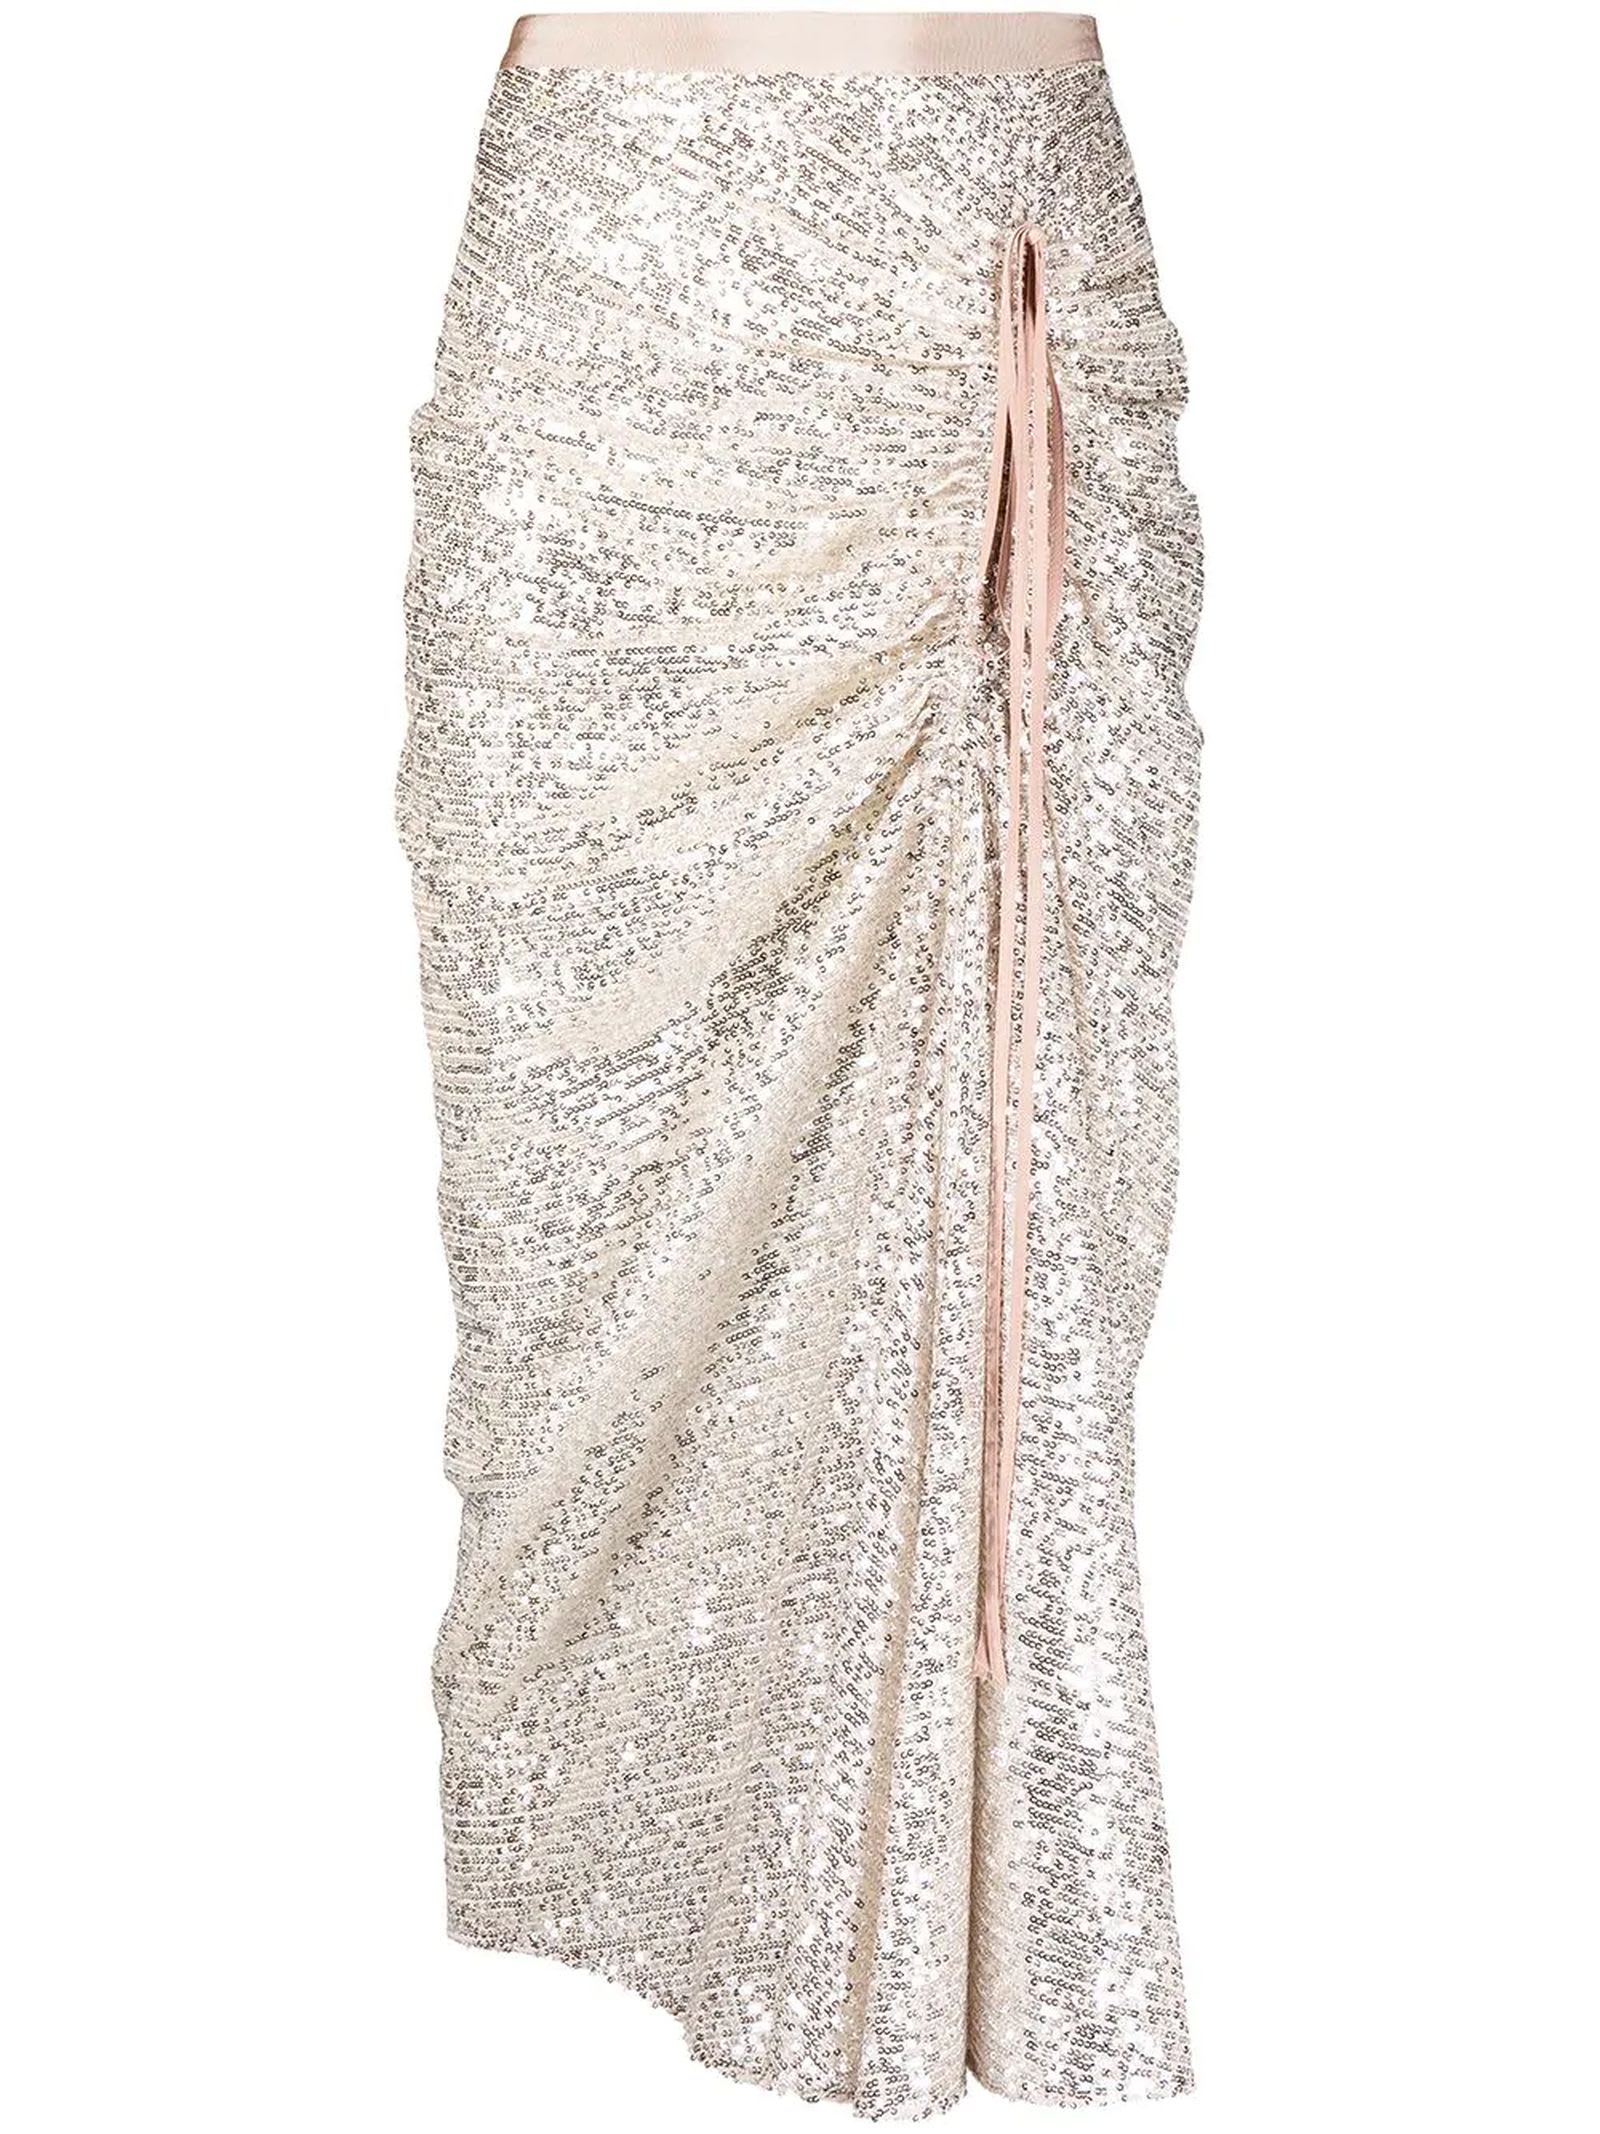 N.21 Silver-tone Sequin-embellished Skirt